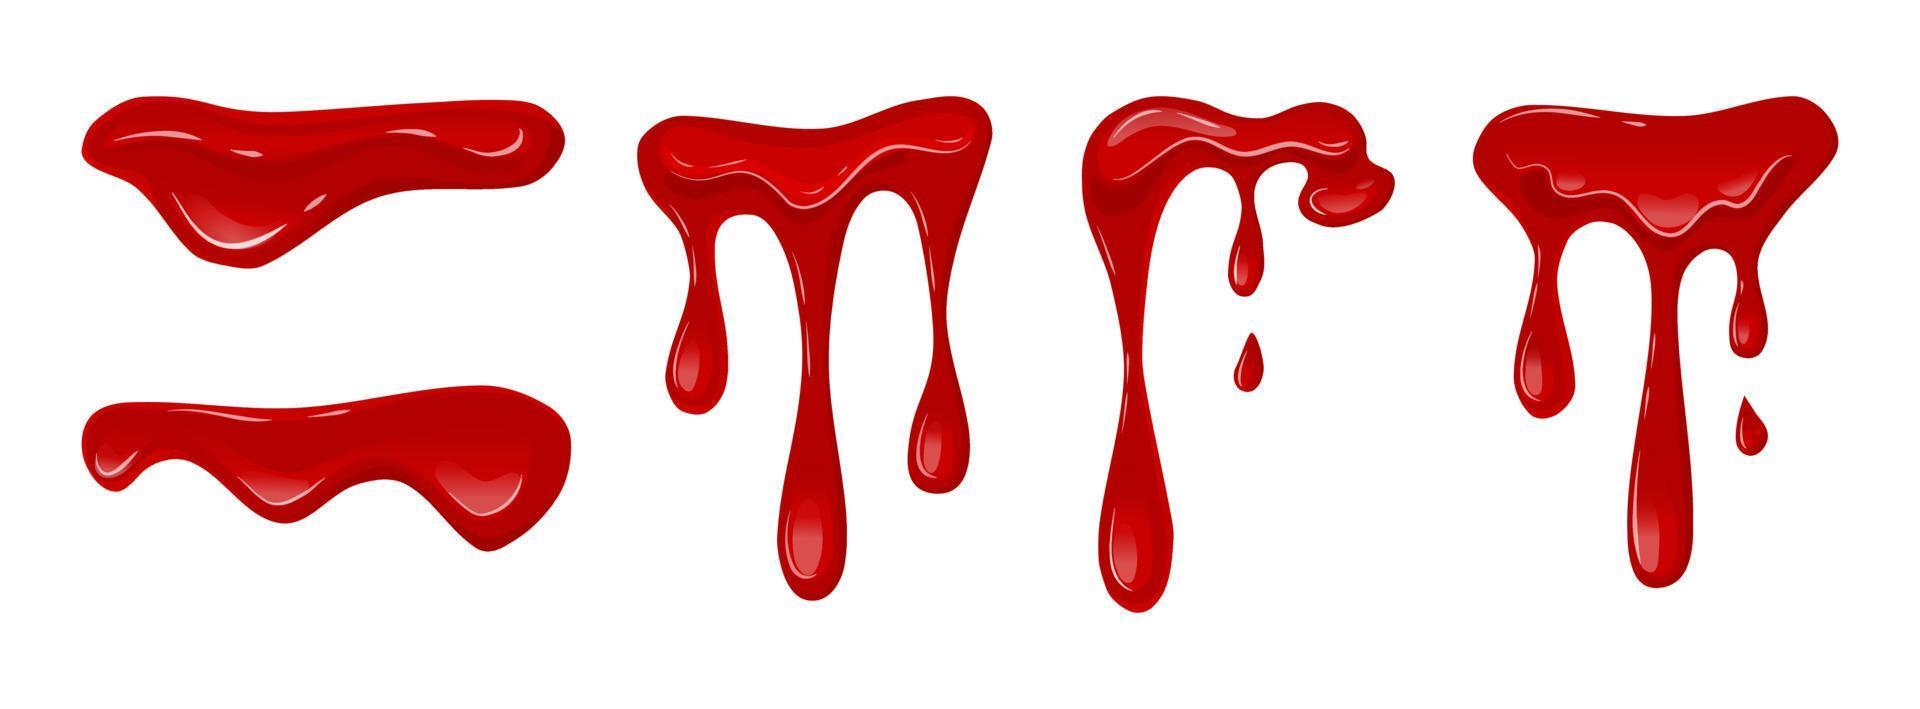 sangue fluindo em um fundo branco e isolado. líquido escorrendo. lodo vermelho. ilustração vetorial dos desenhos animados. vetor